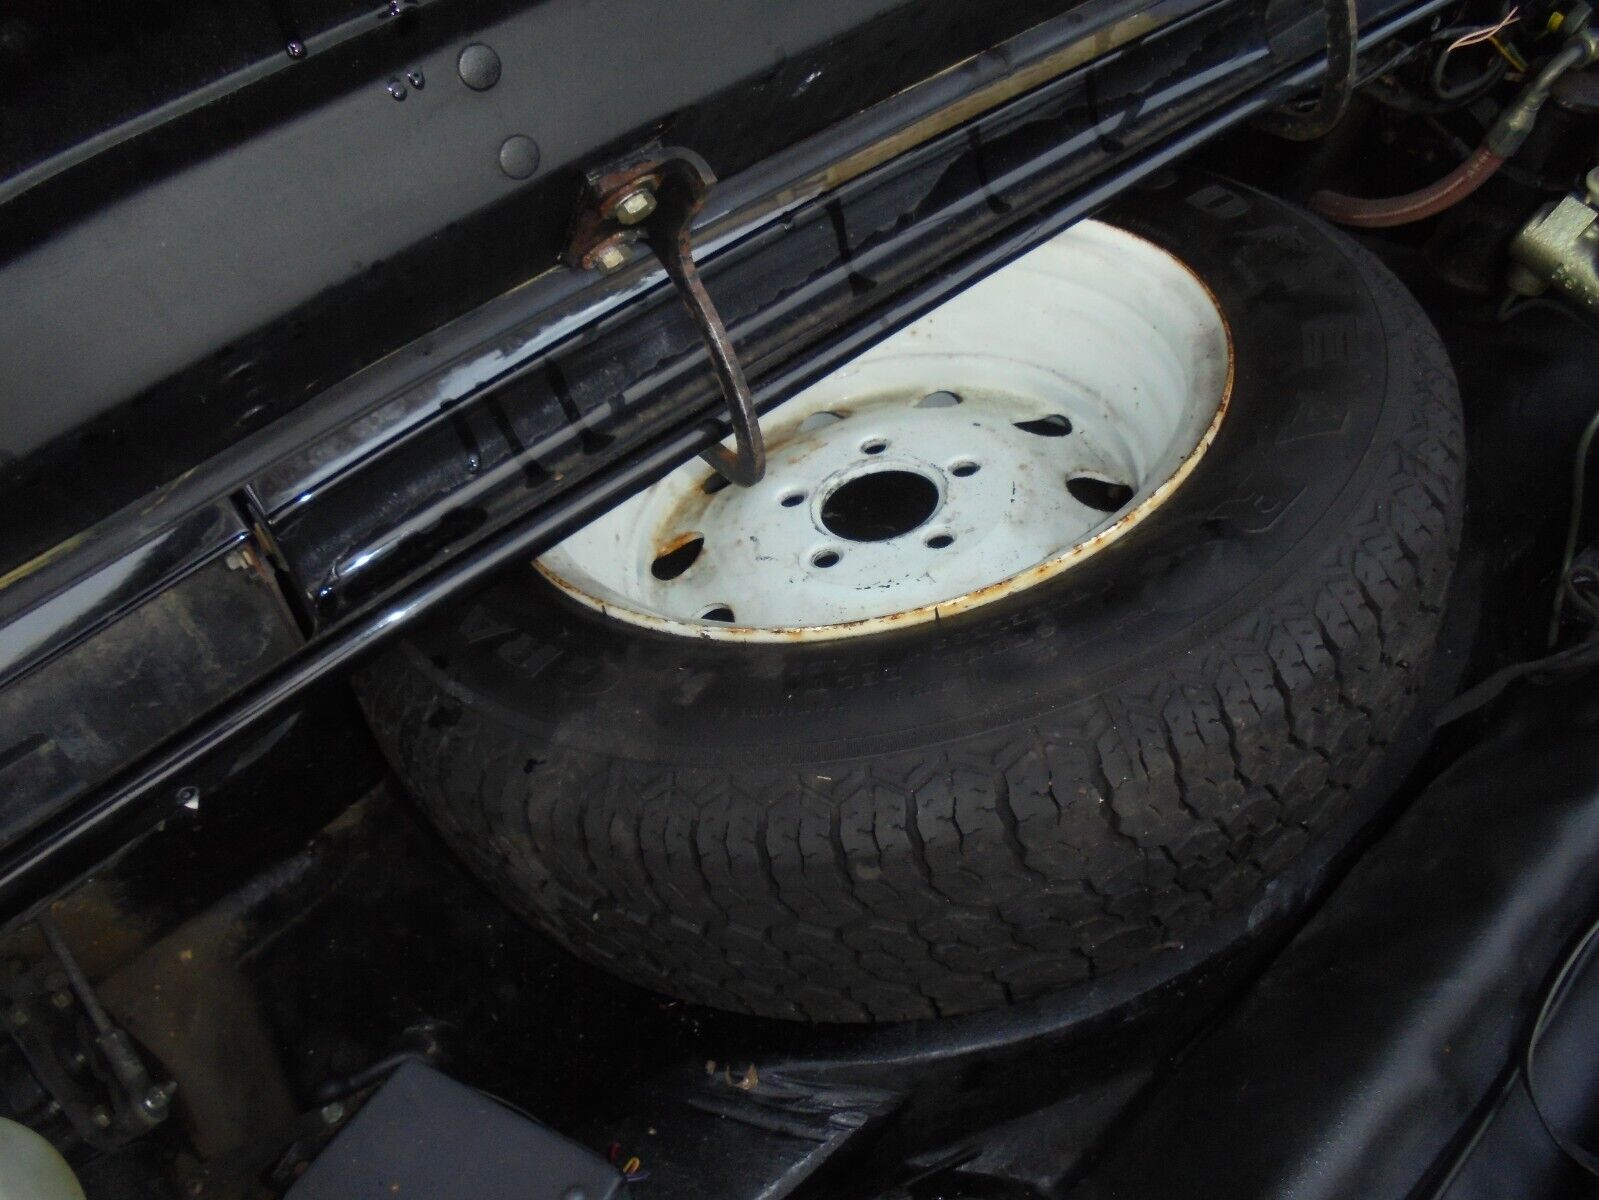 Lotus Esprit Spare Wheel - dodgy measurements make it a Stevens car ??